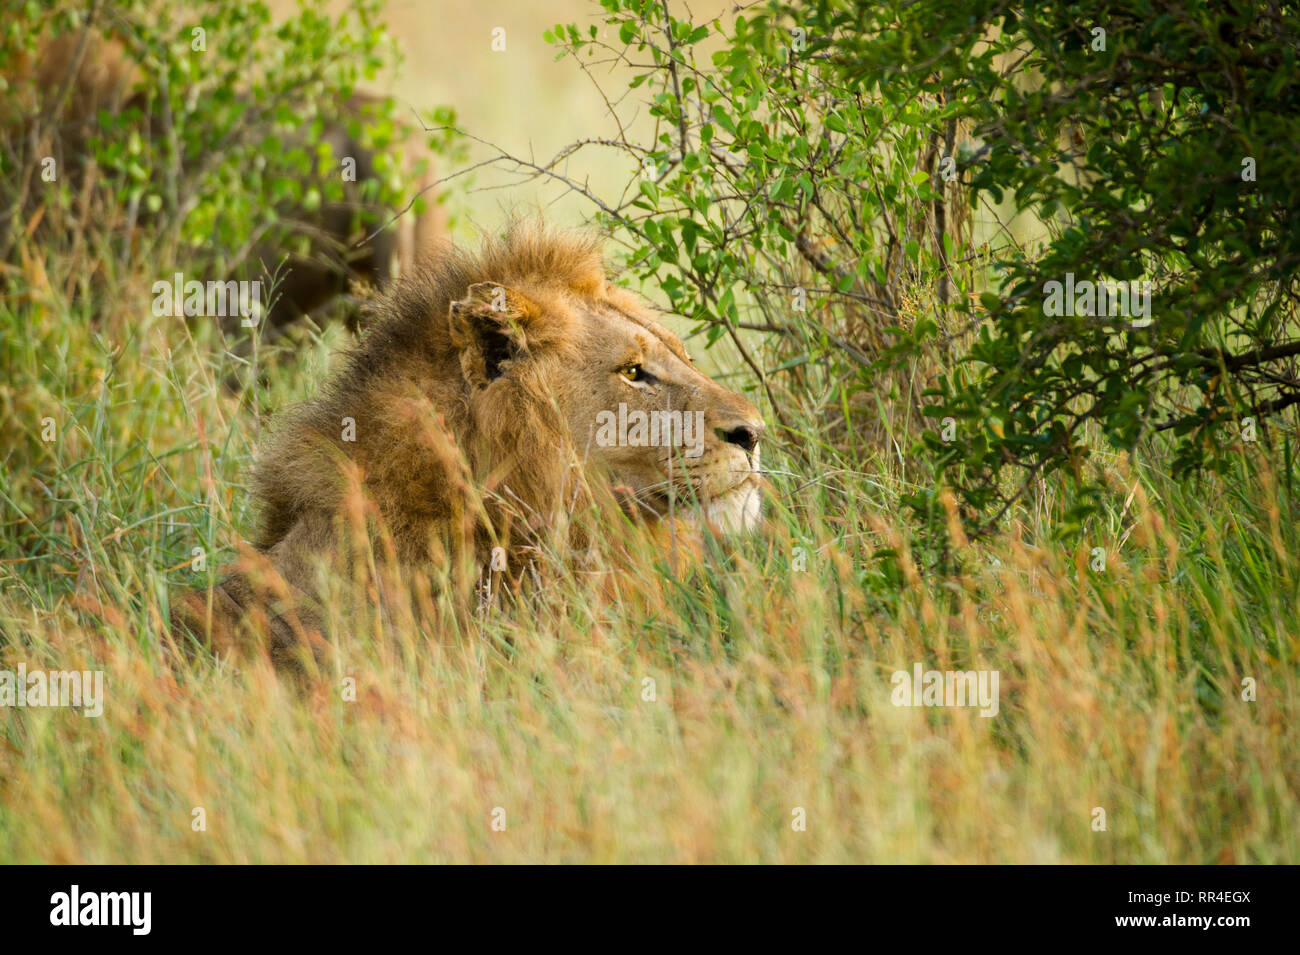 Homme Lion, Panthera leo, Kruger National Park, Afrique du Sud Banque D'Images